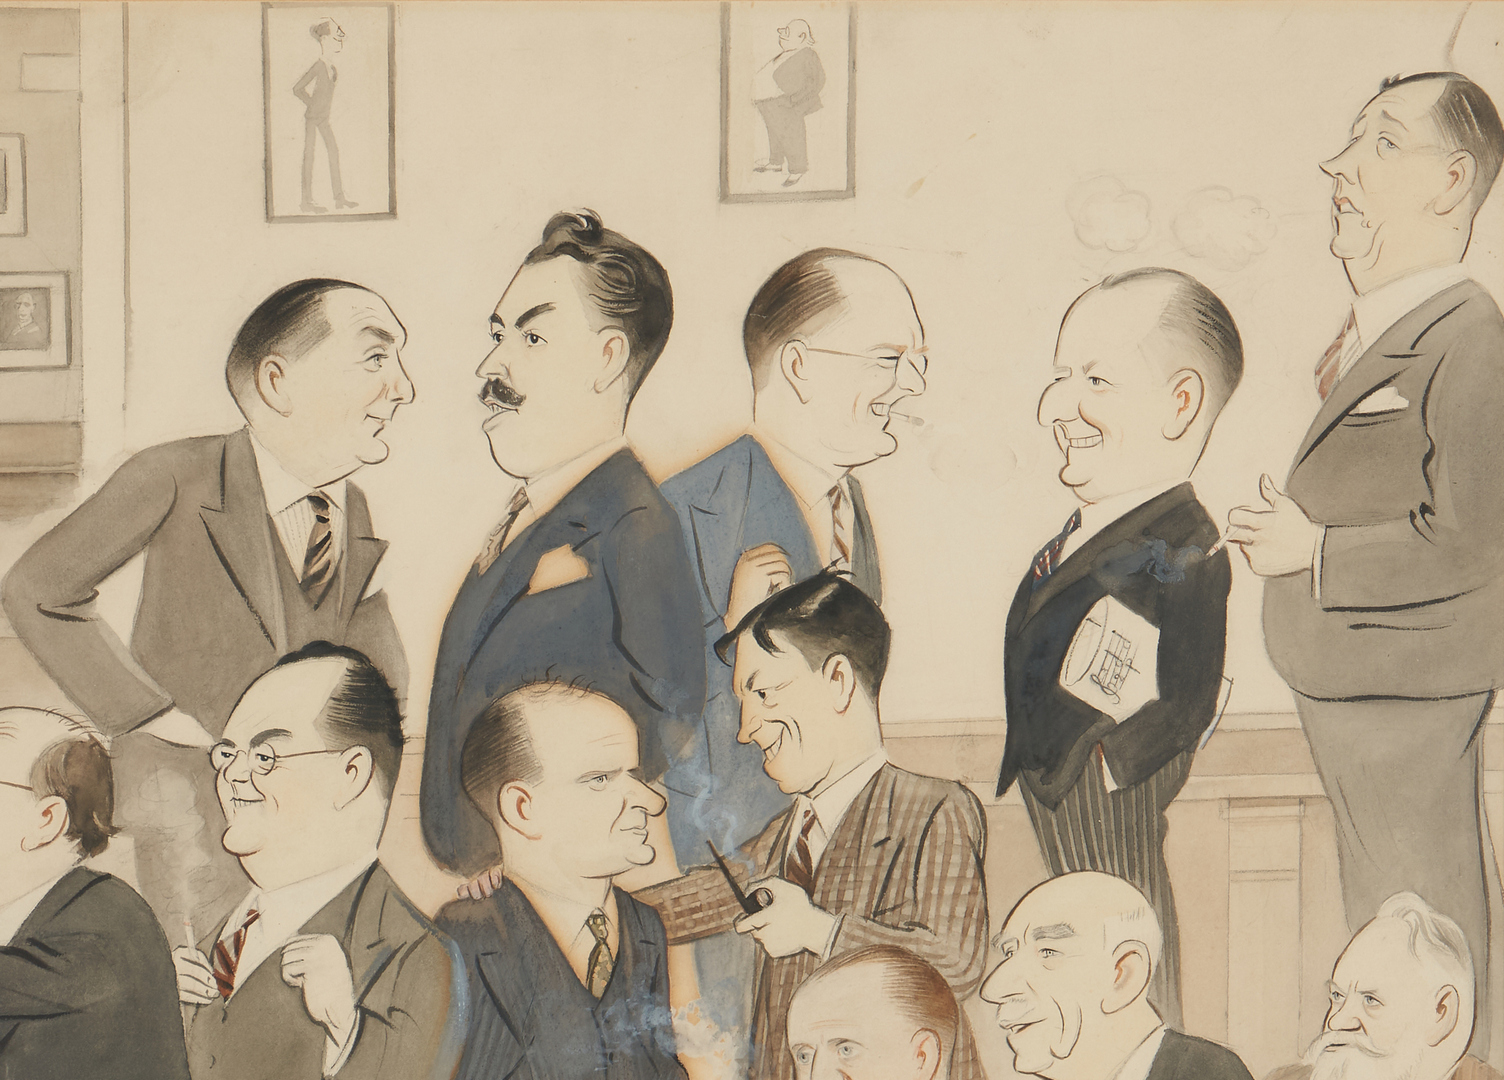 Lot 626: World War II Era Caricature Illustration, "Press Club"